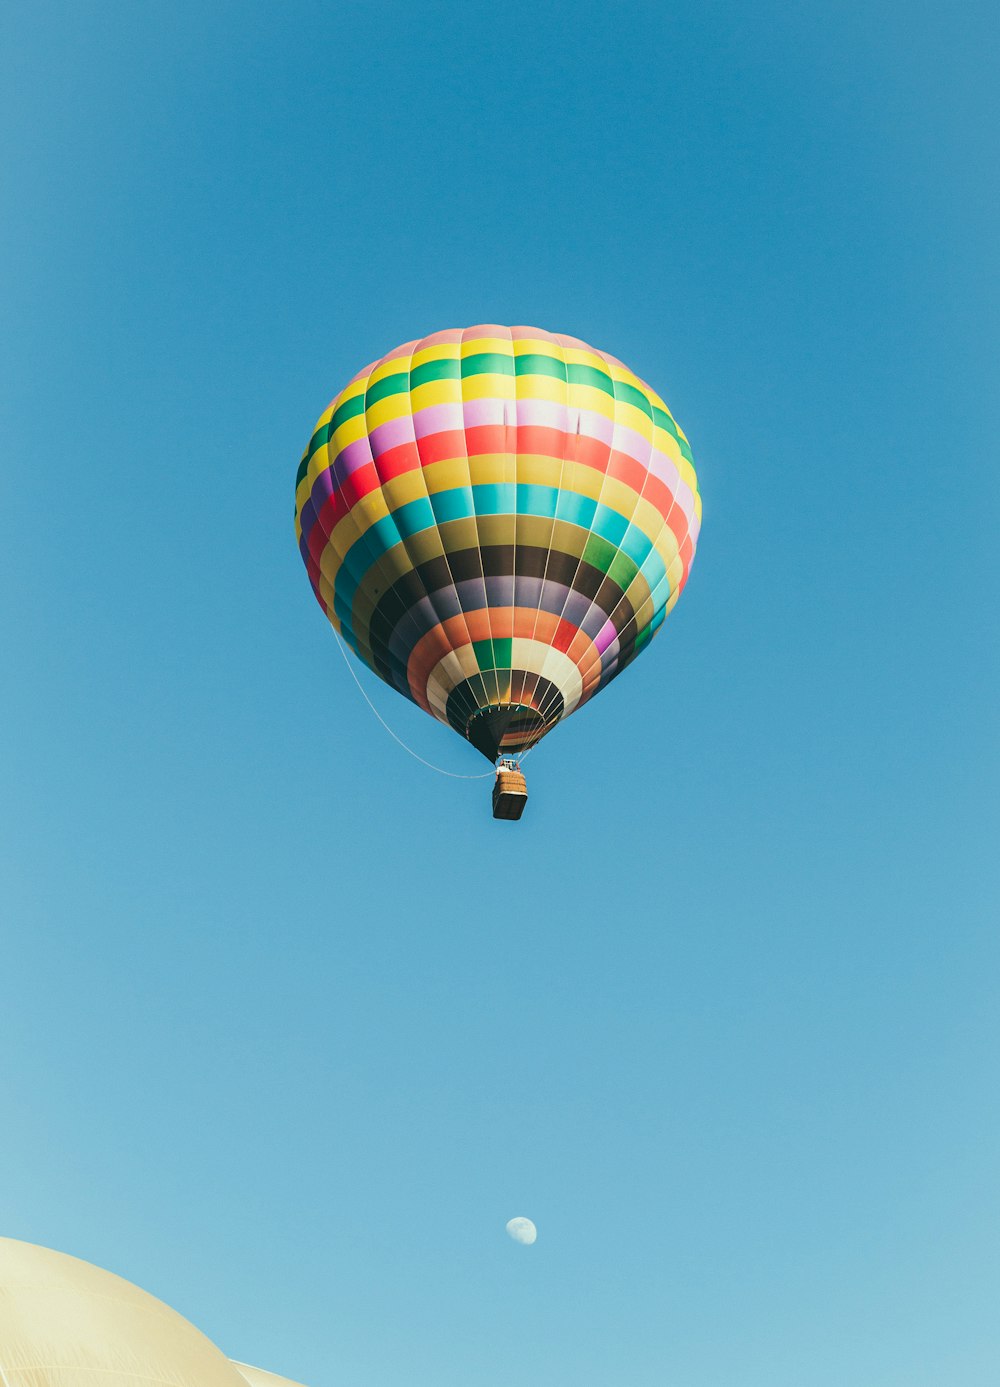 globo aerostático multicolor bajo el cielo azul